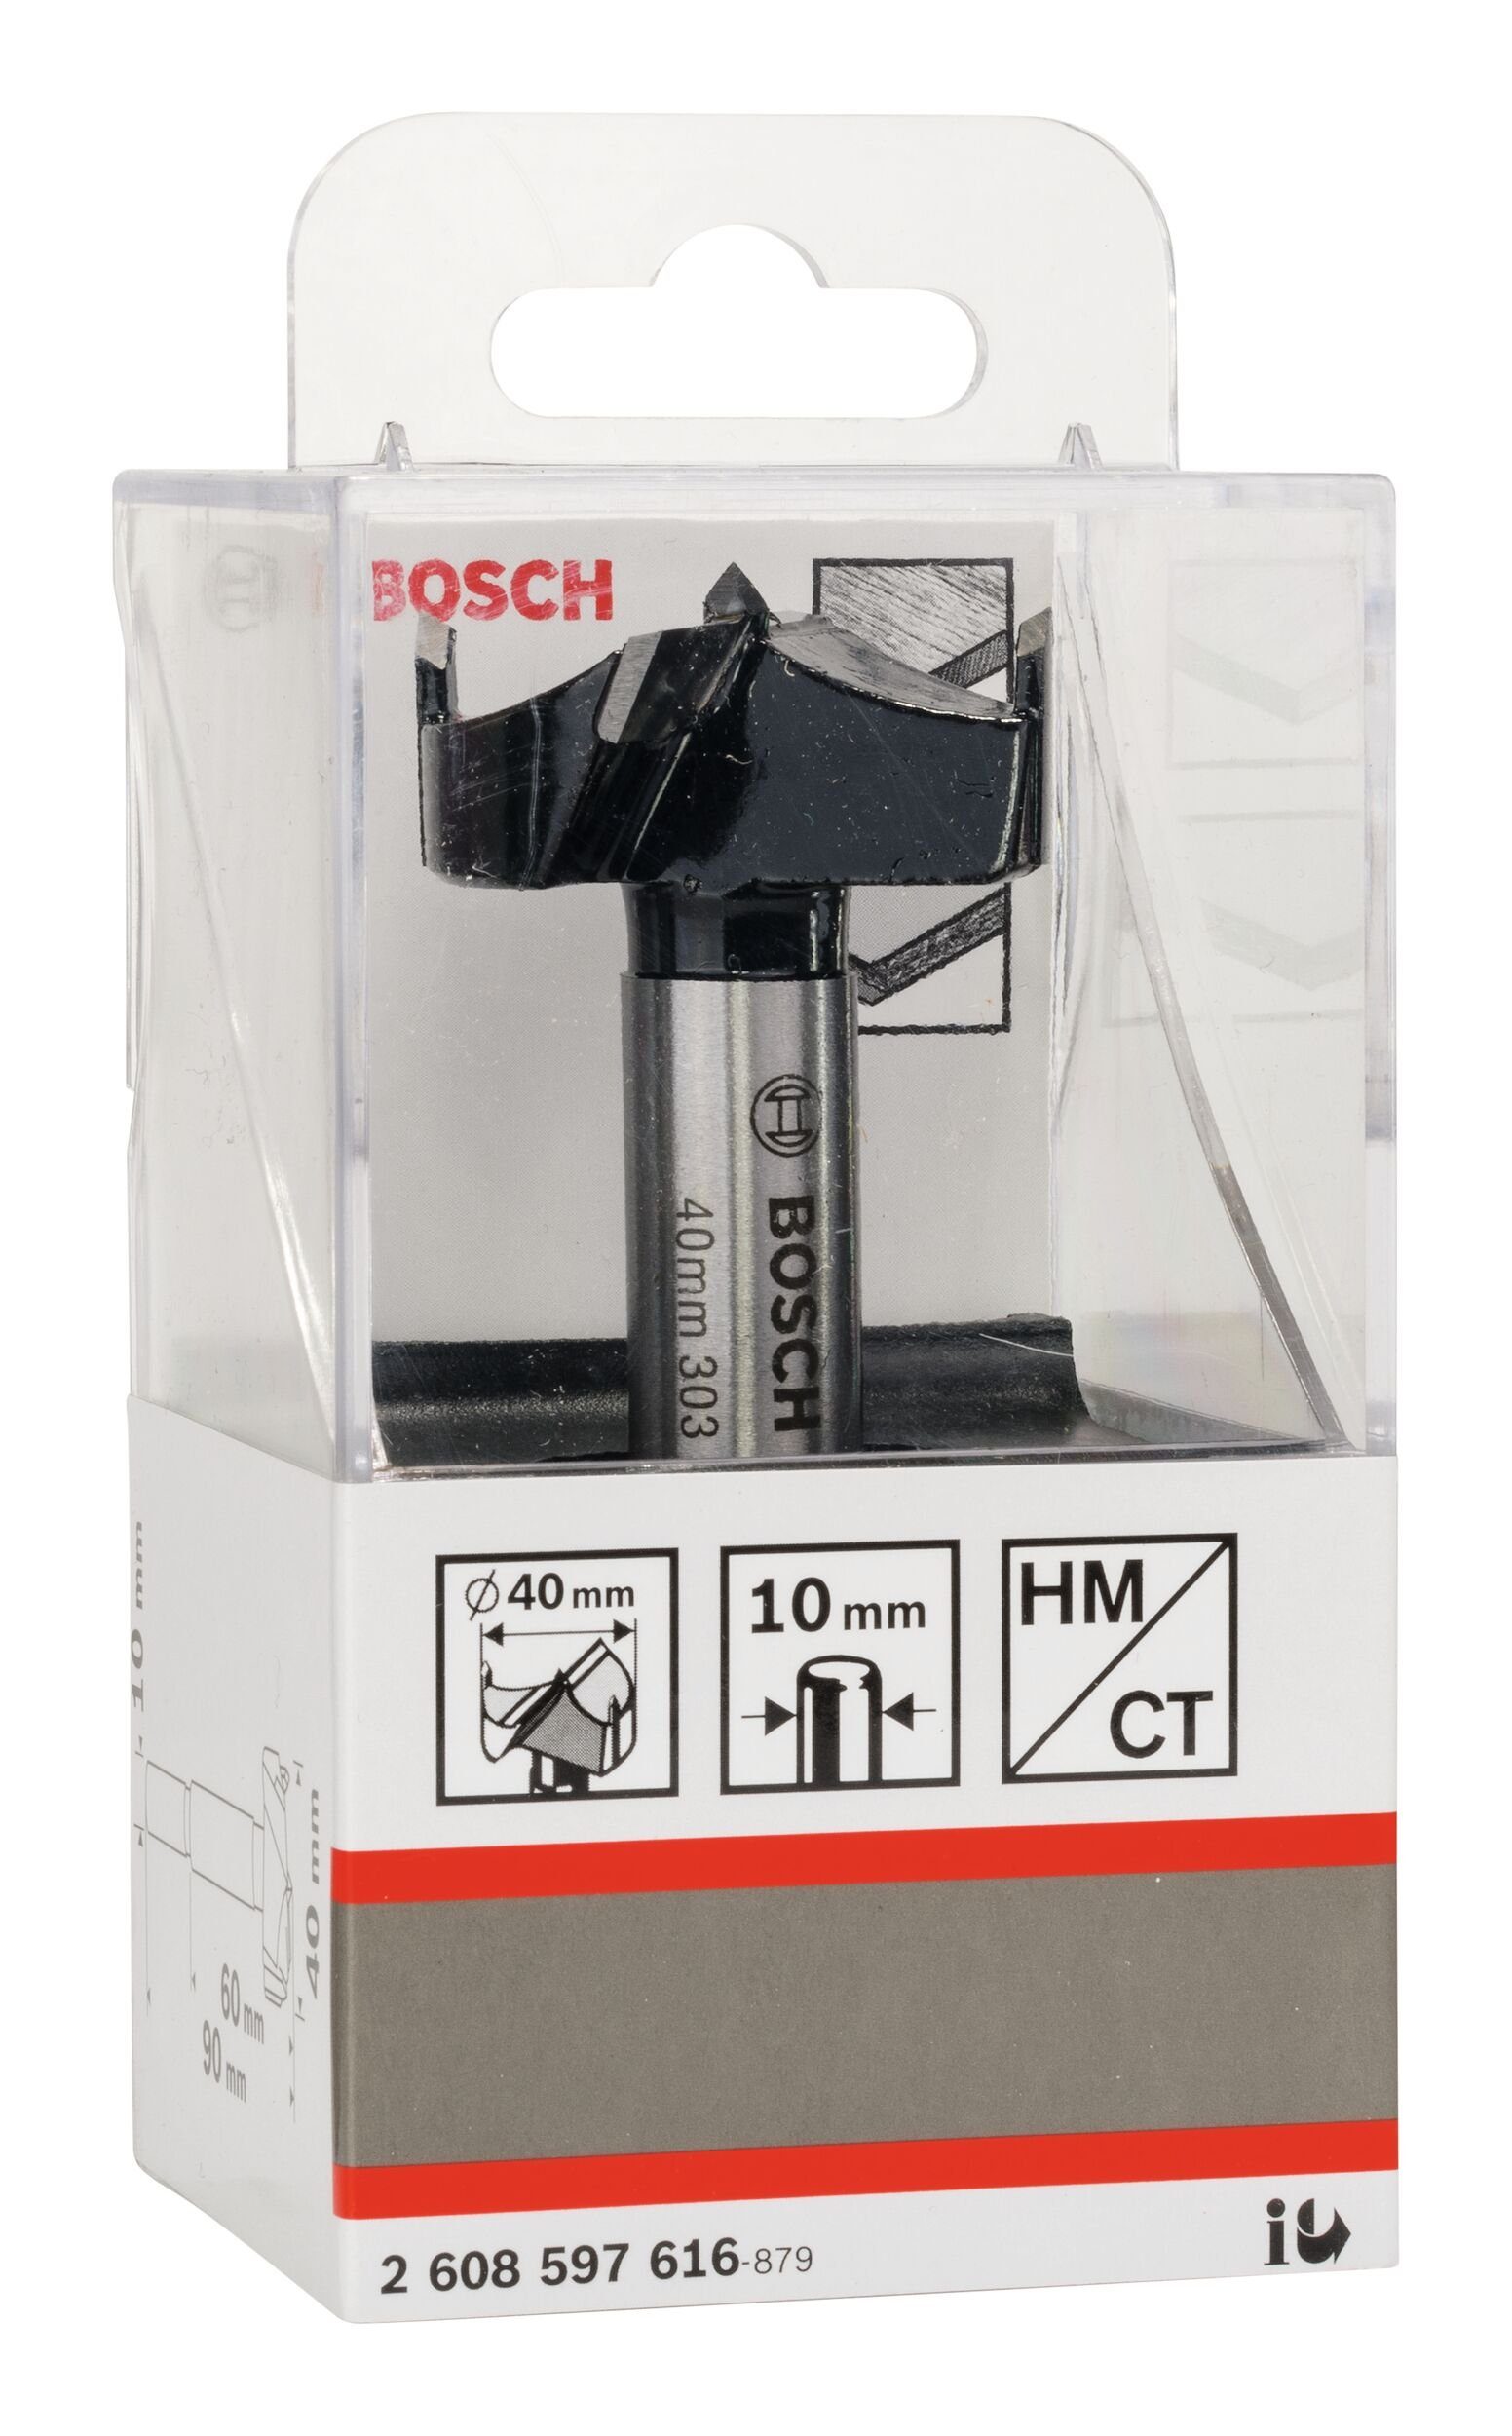 BOSCH Holzbohrer, HM Kunstbohrer - x 40 1er-Pack x 90 10 mm 